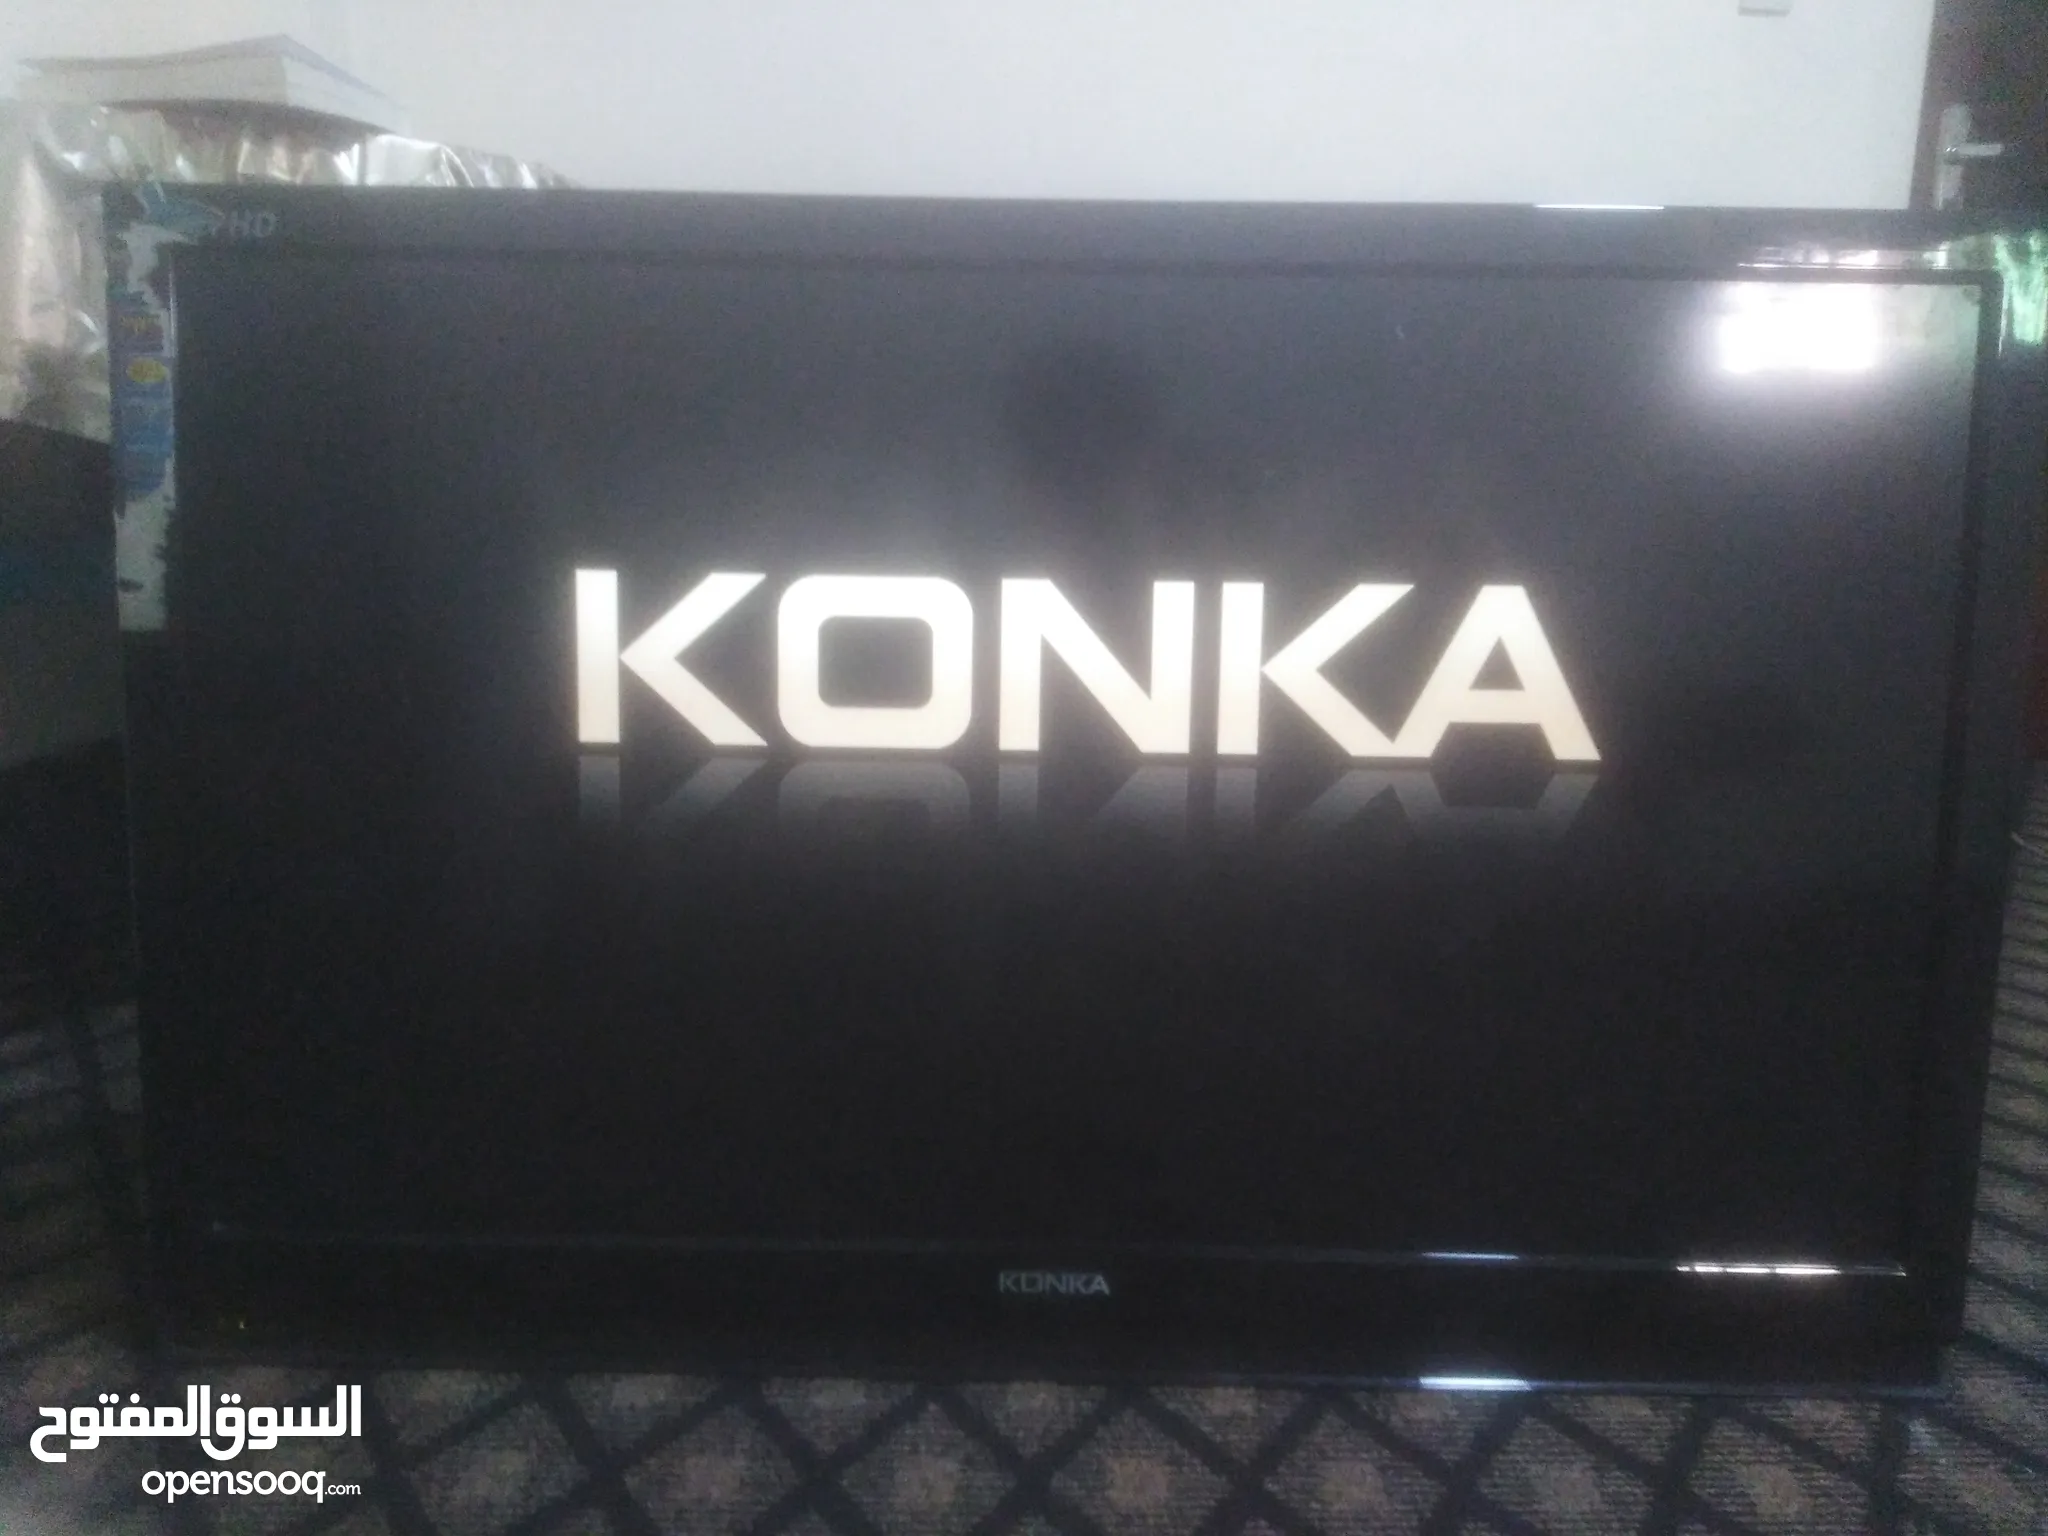 شاشات وتلفزيونات كونكا للبيع في الأردن | السوق المفتوح